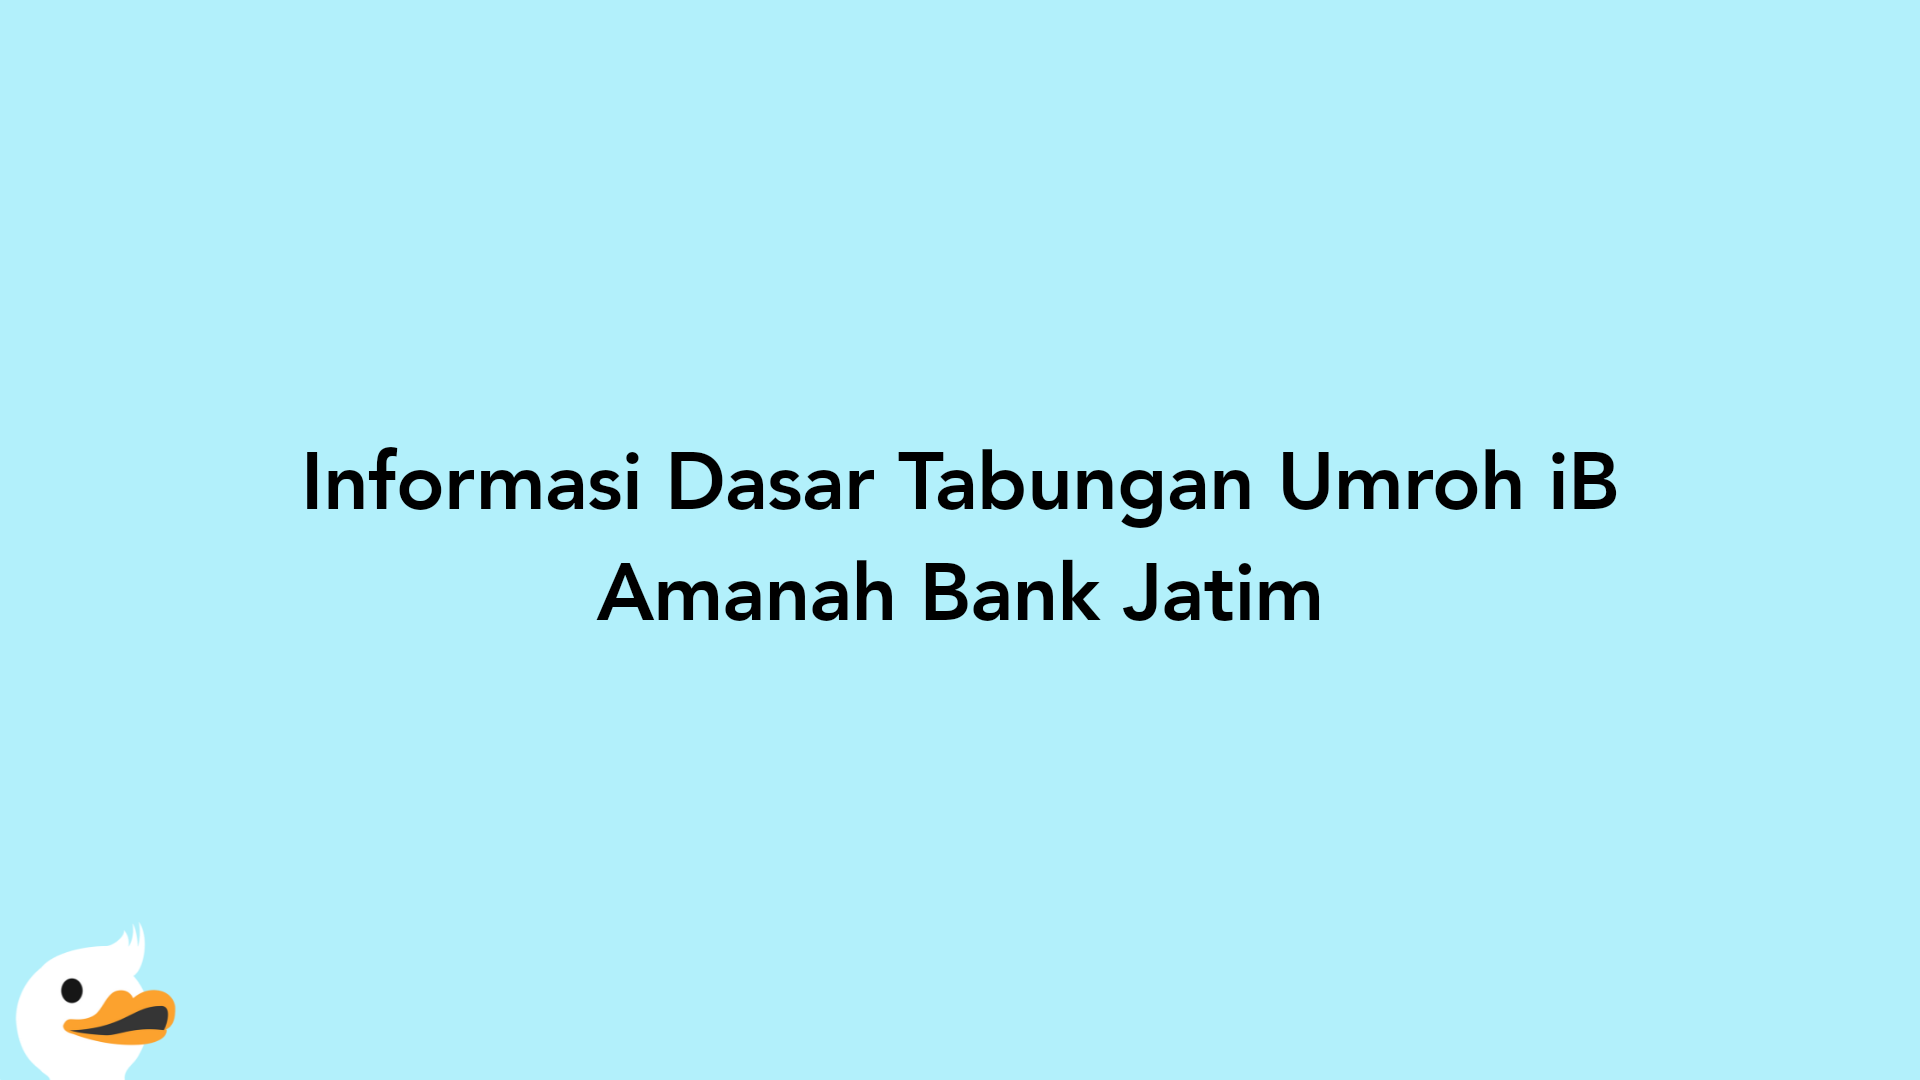 Informasi Dasar Tabungan Umroh iB Amanah Bank Jatim